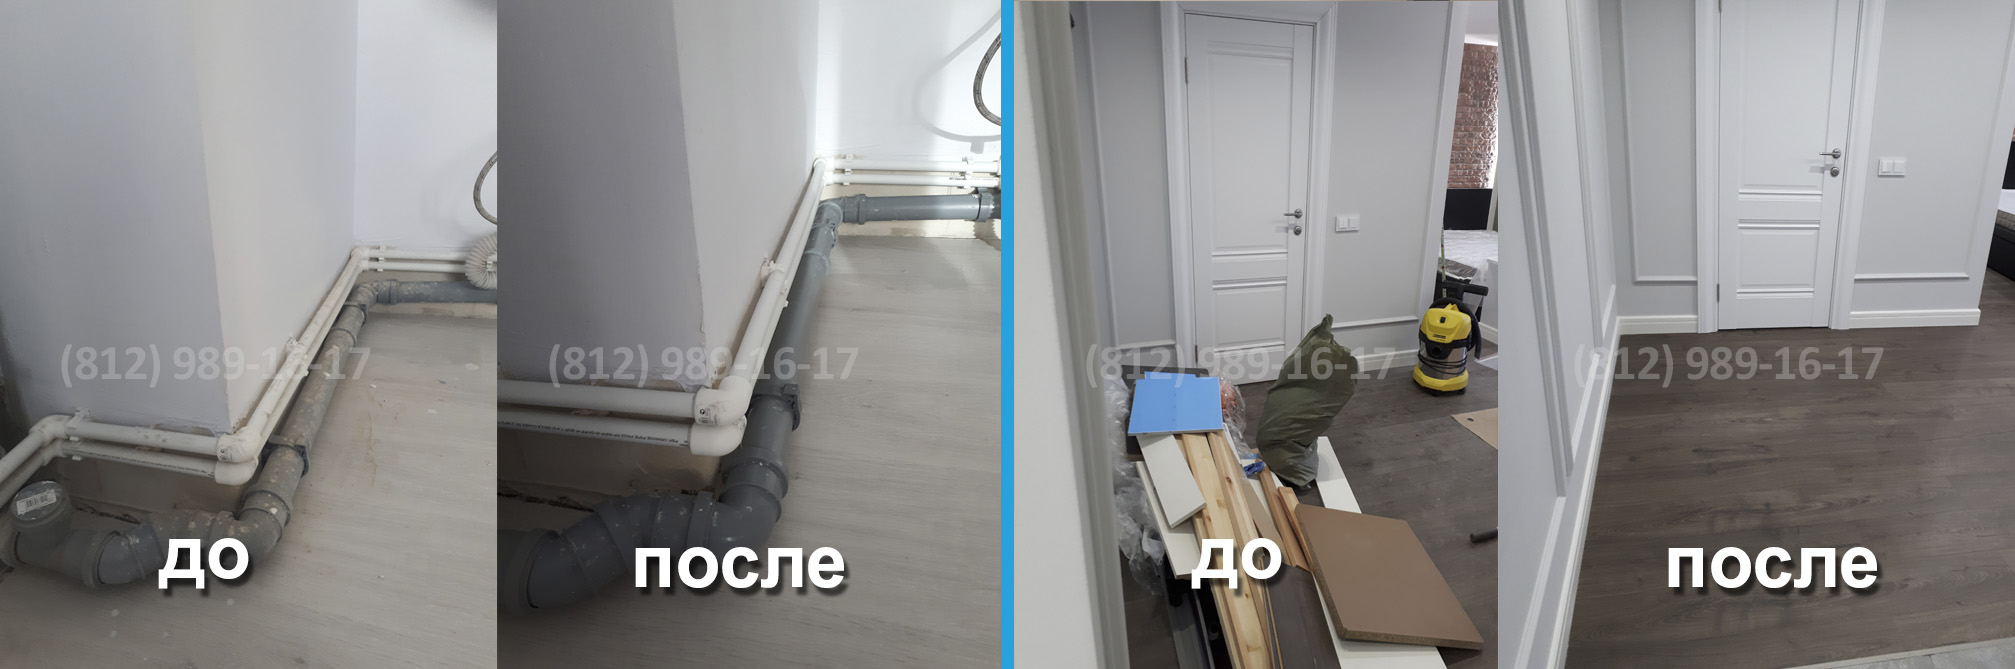 Послестроительная уборка коттеджа в Санкт-Петербурге